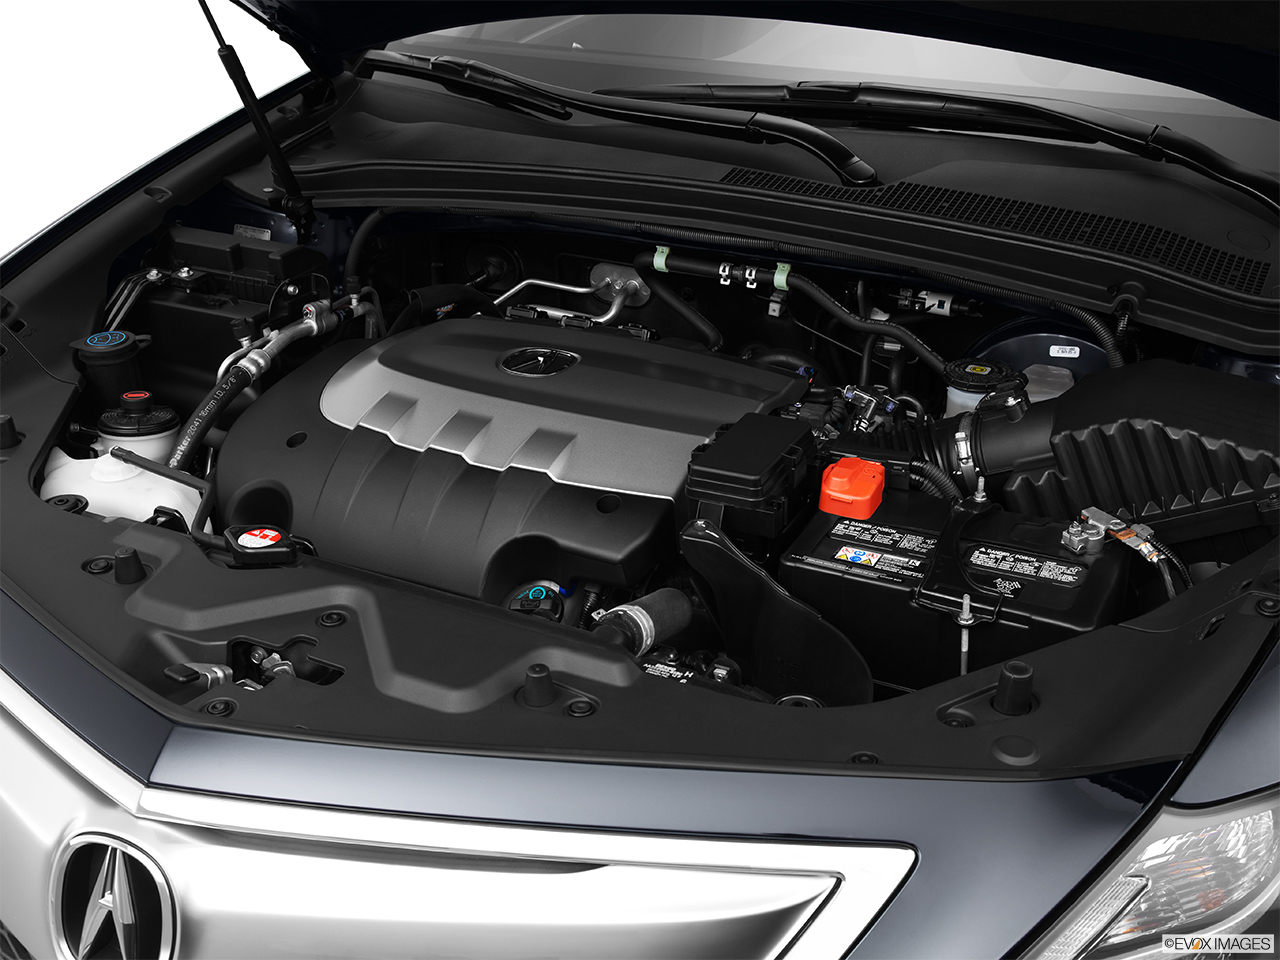 2013 Acura ZDX Base Engine. 